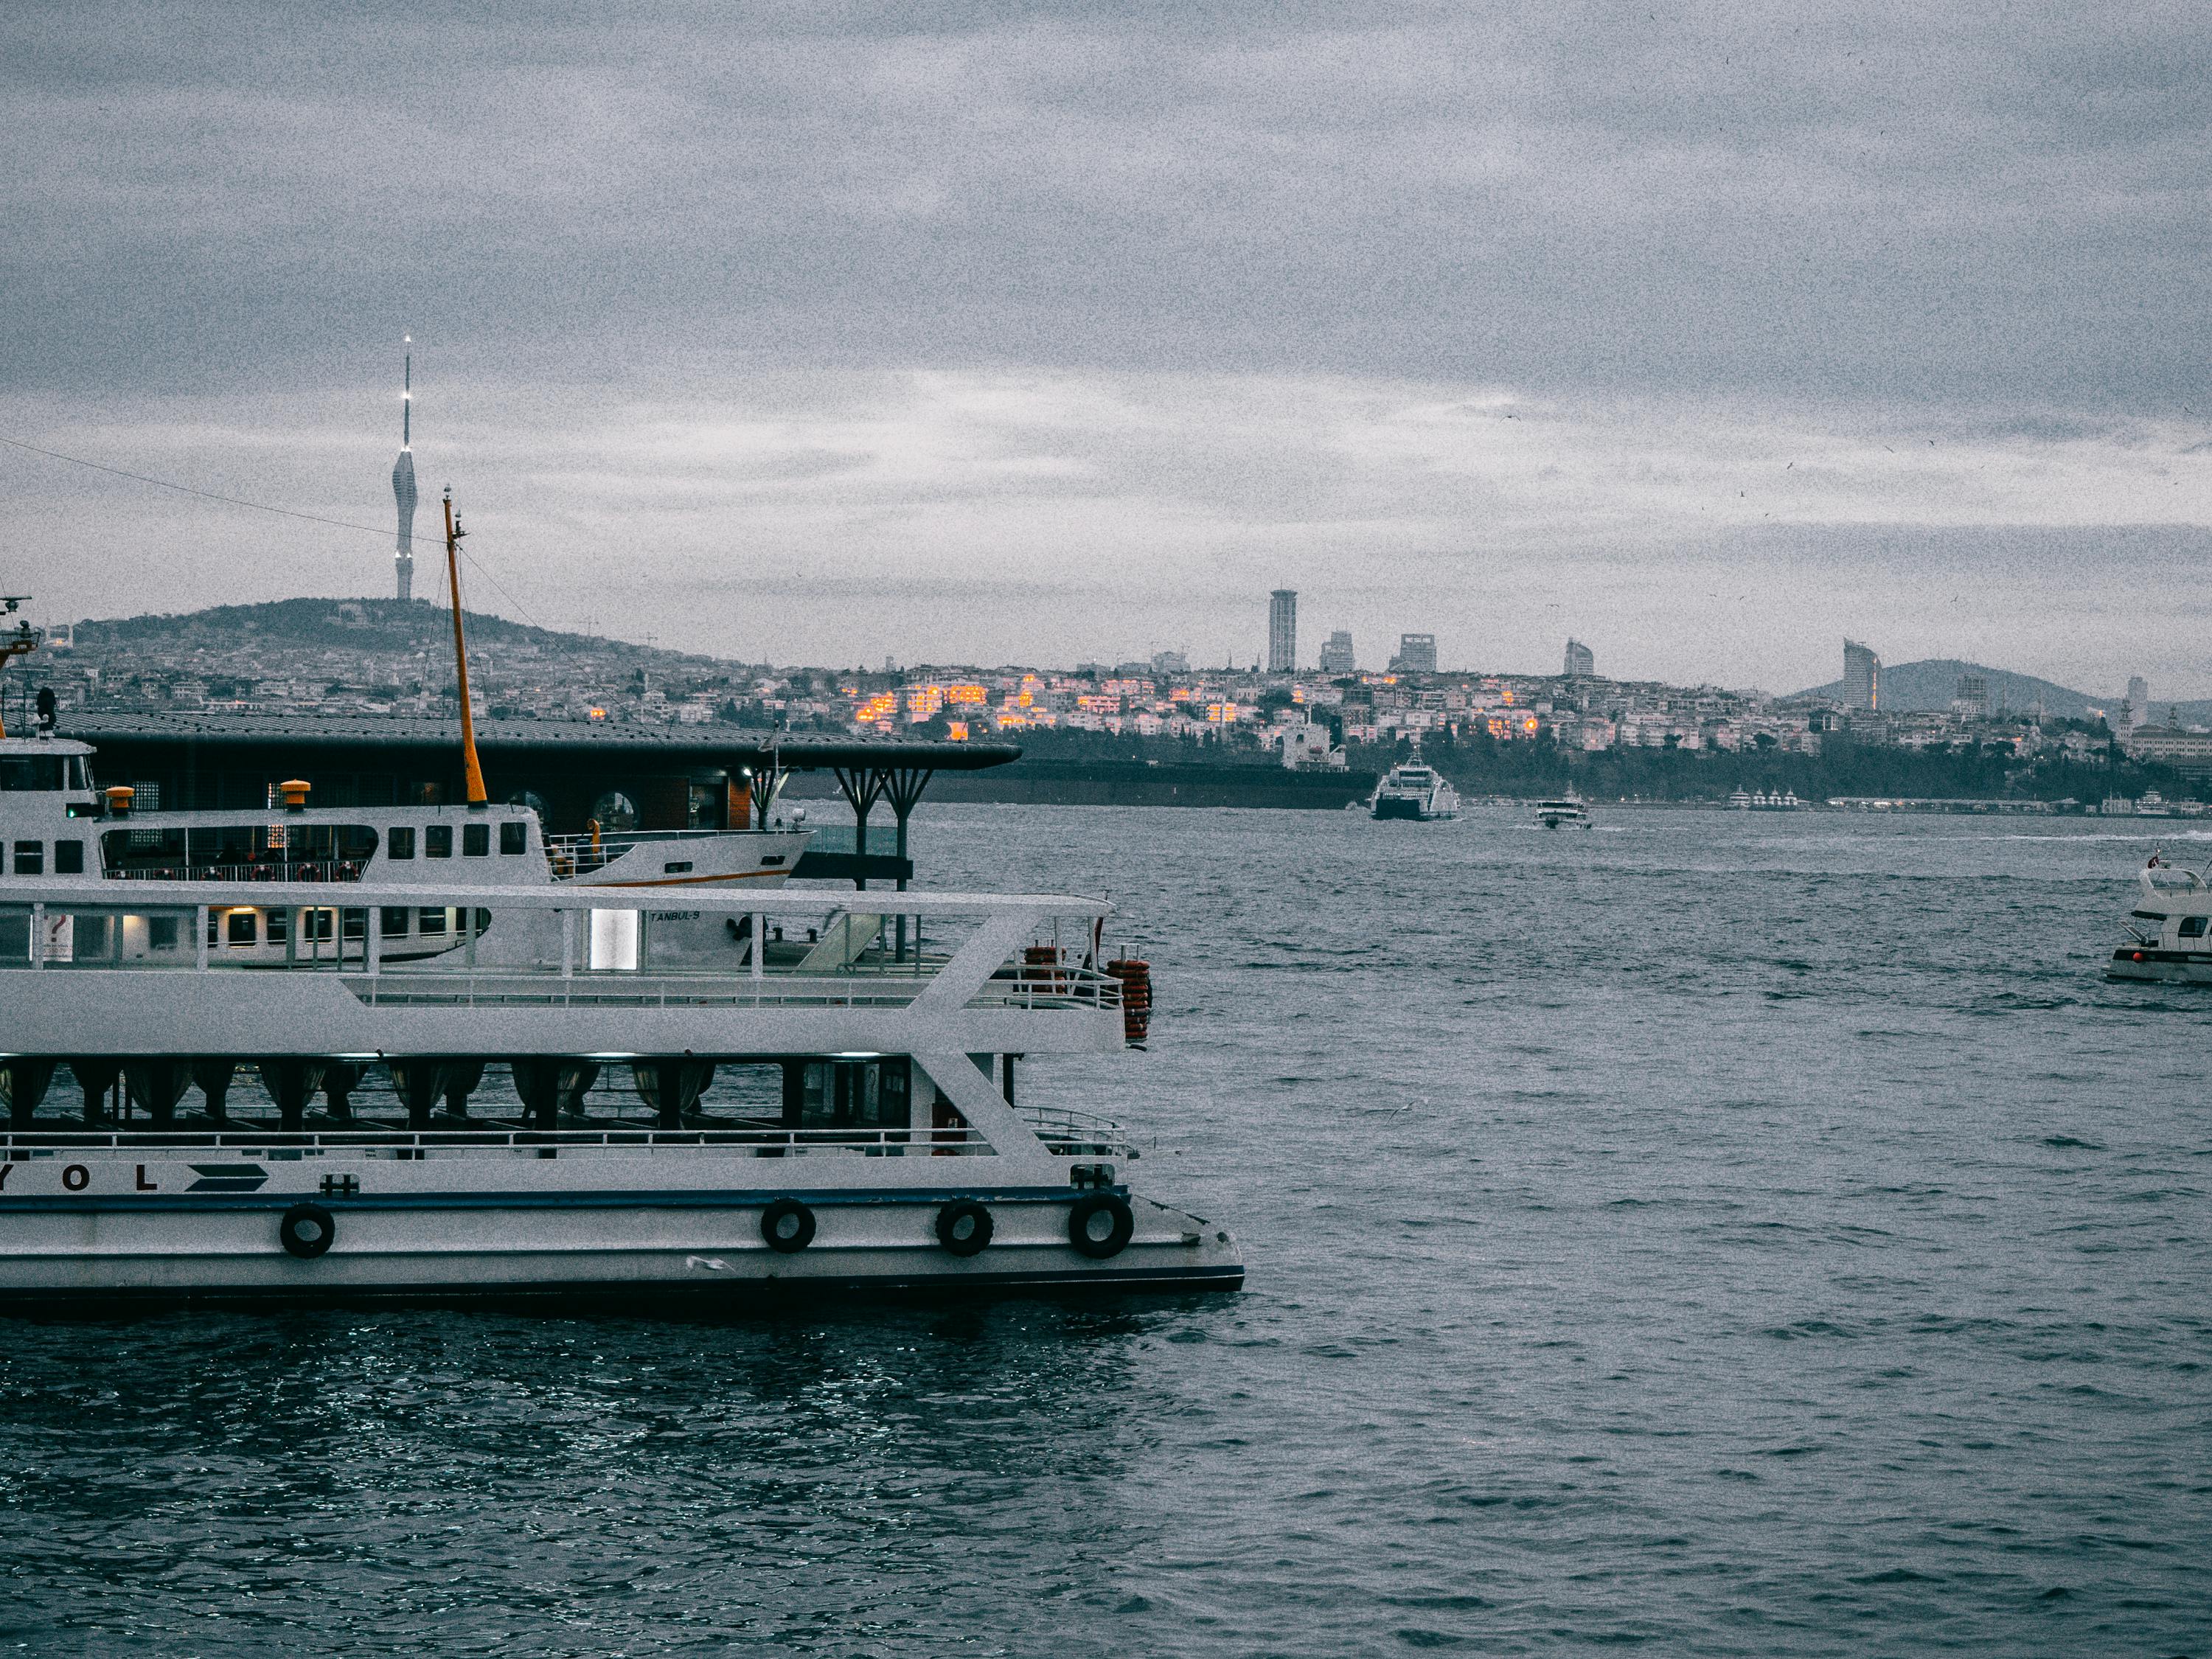 伊斯坦堡, 土耳其, 帆船 的 免費圖庫相片